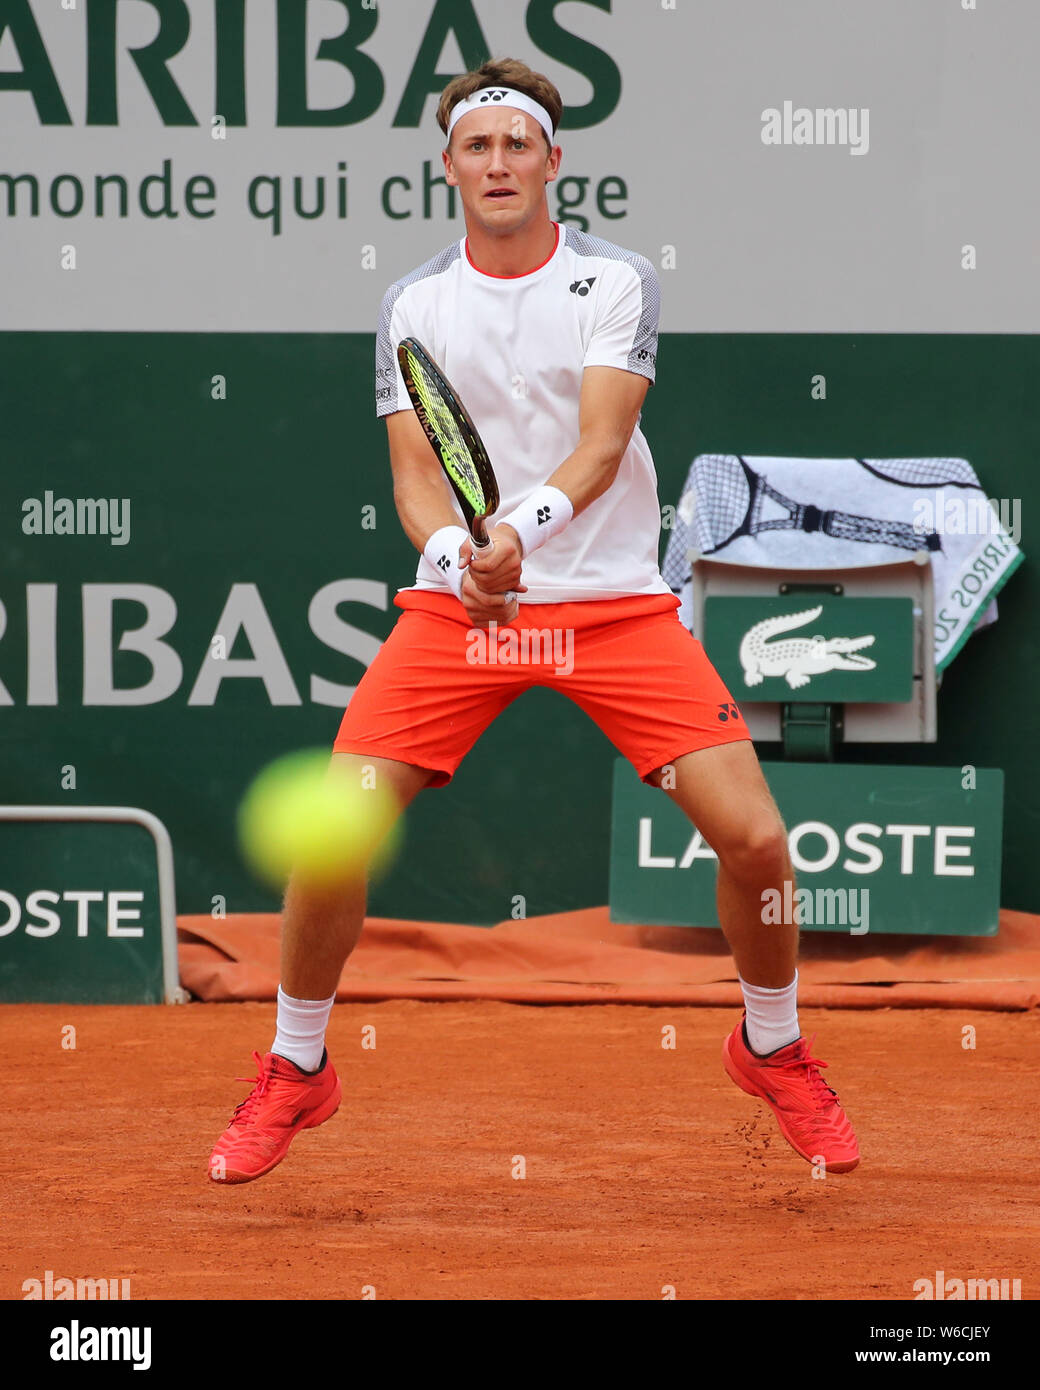 Jugador de tenis noruego Casper Ruud espera de servicio del oponente en el  Abierto de Francia 2019, París, Francia Fotografía de stock - Alamy